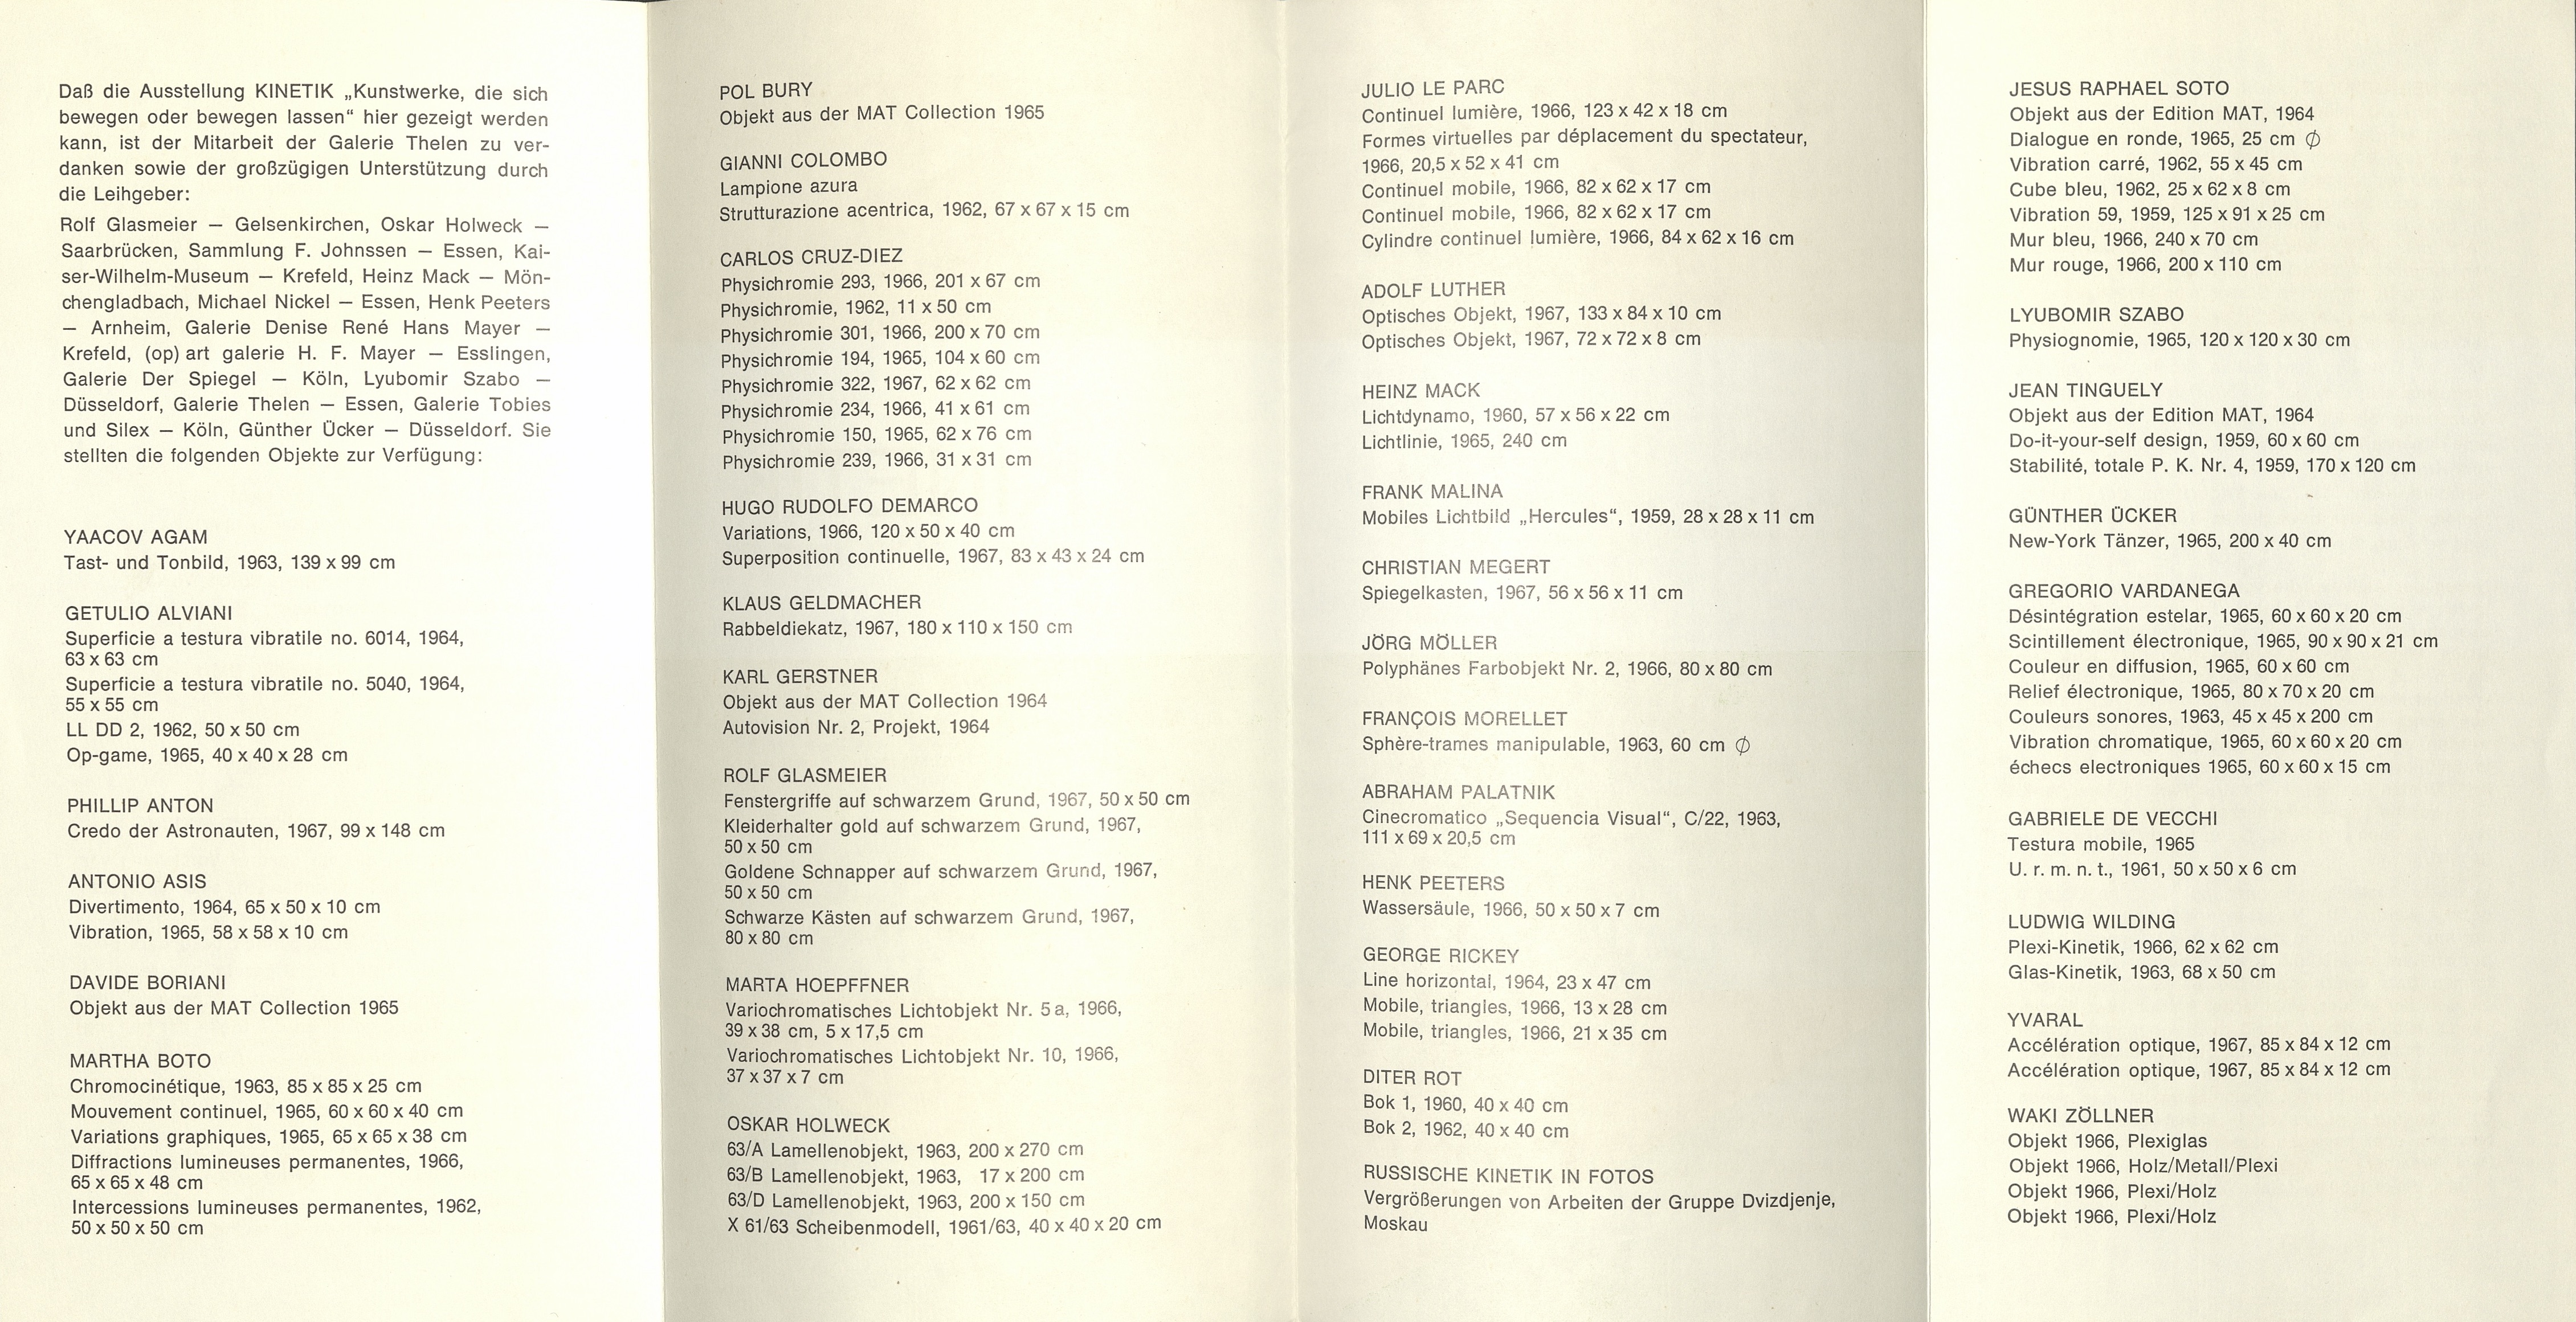 Kinetik, Volkshochschule Köln, Cologne 1967 (Invitation); Archiv der Avantgarden, Staatliche Kunstsammlungen Dresden 